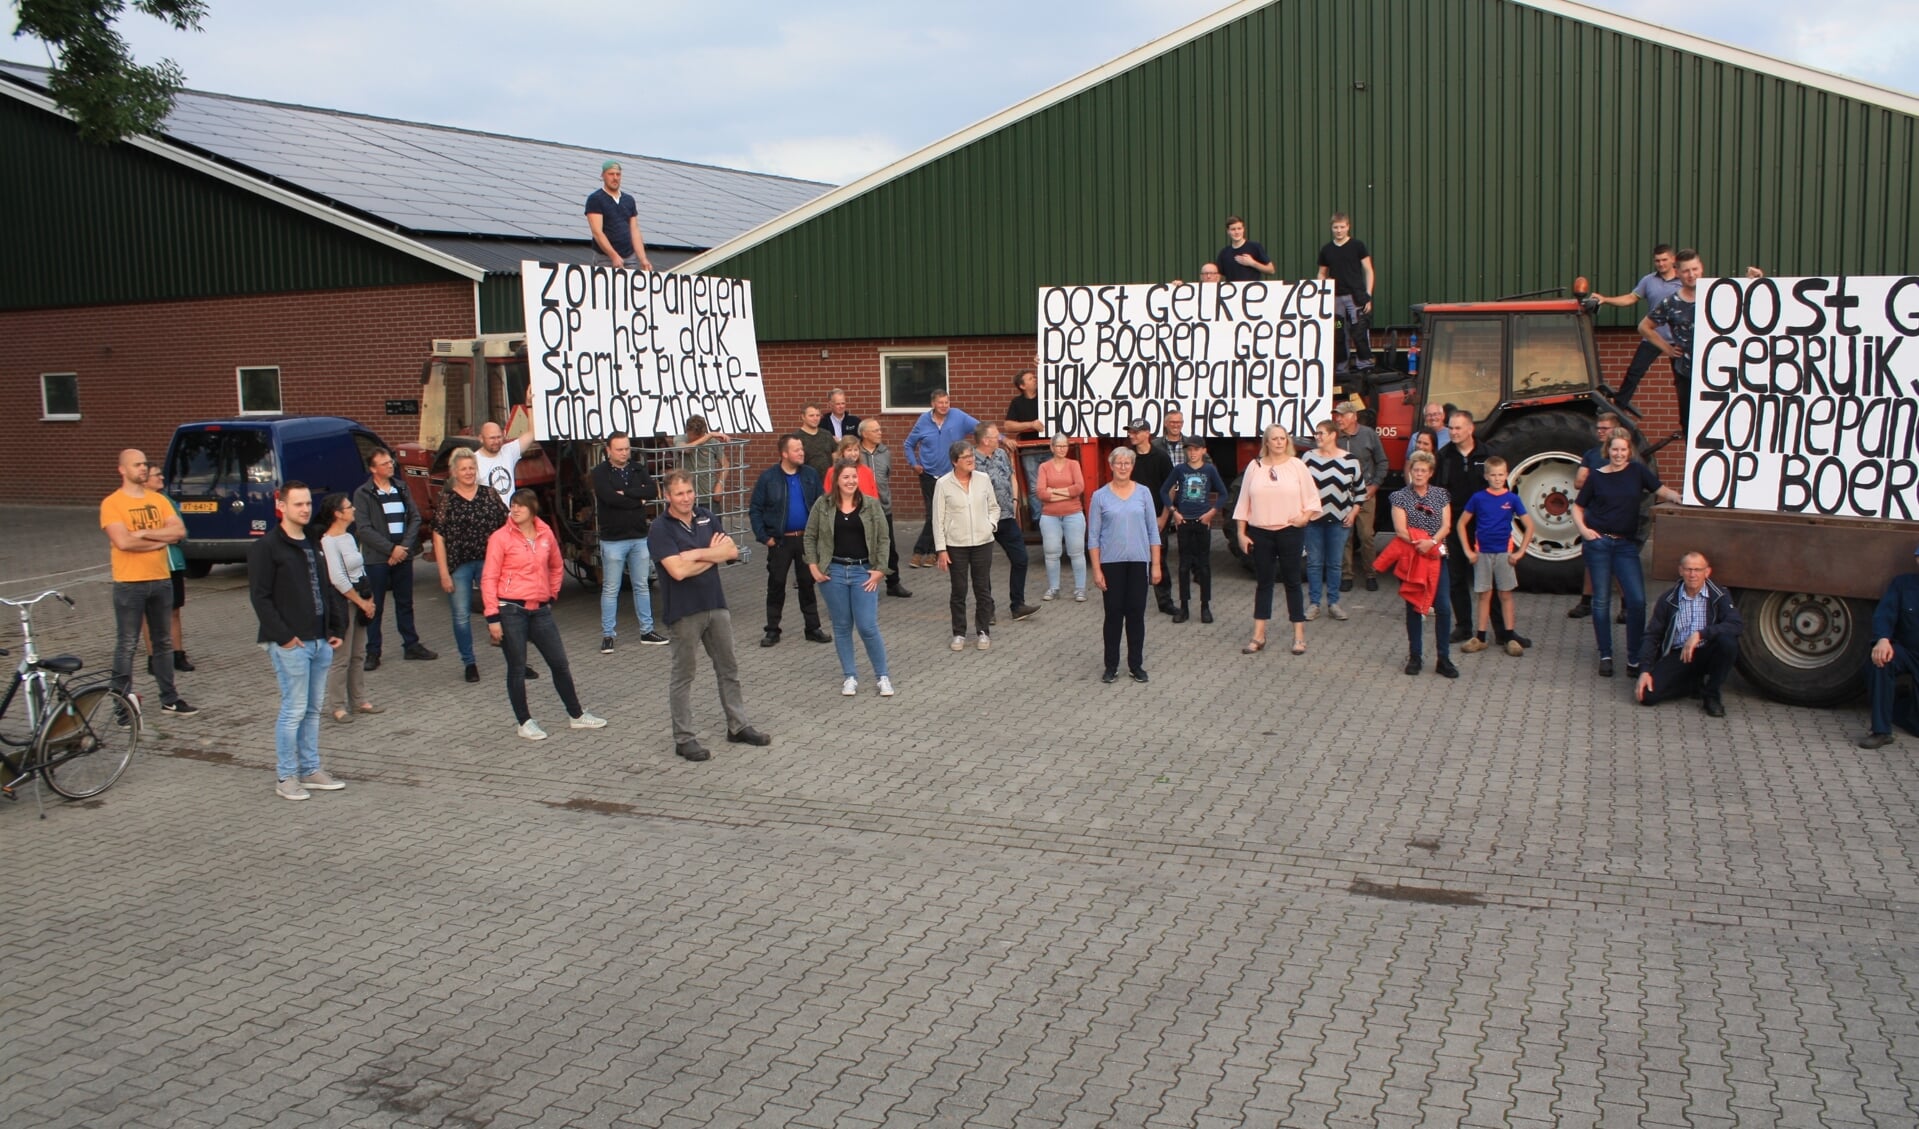 Protest in Zwolle tegen grootschalige zonneparken. Foto: Kyra Broshuis